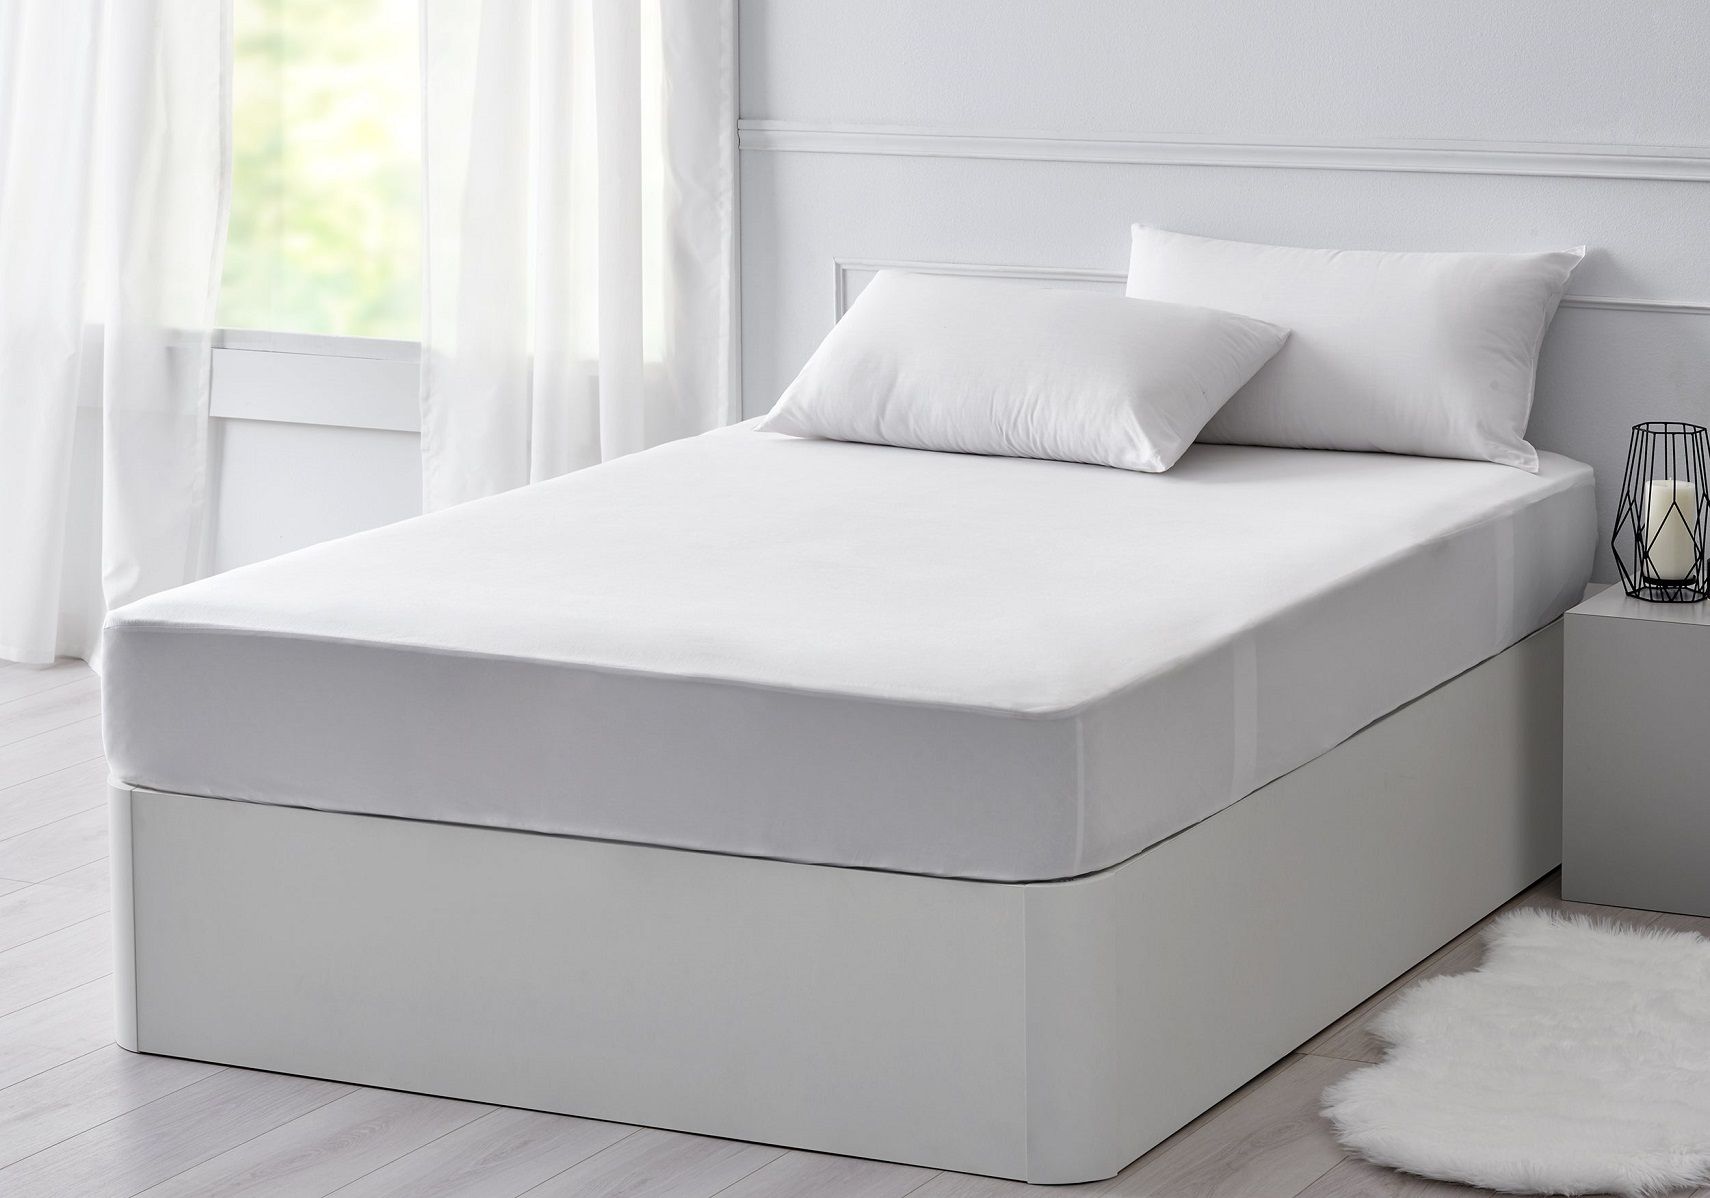 firm mattress pad reviews